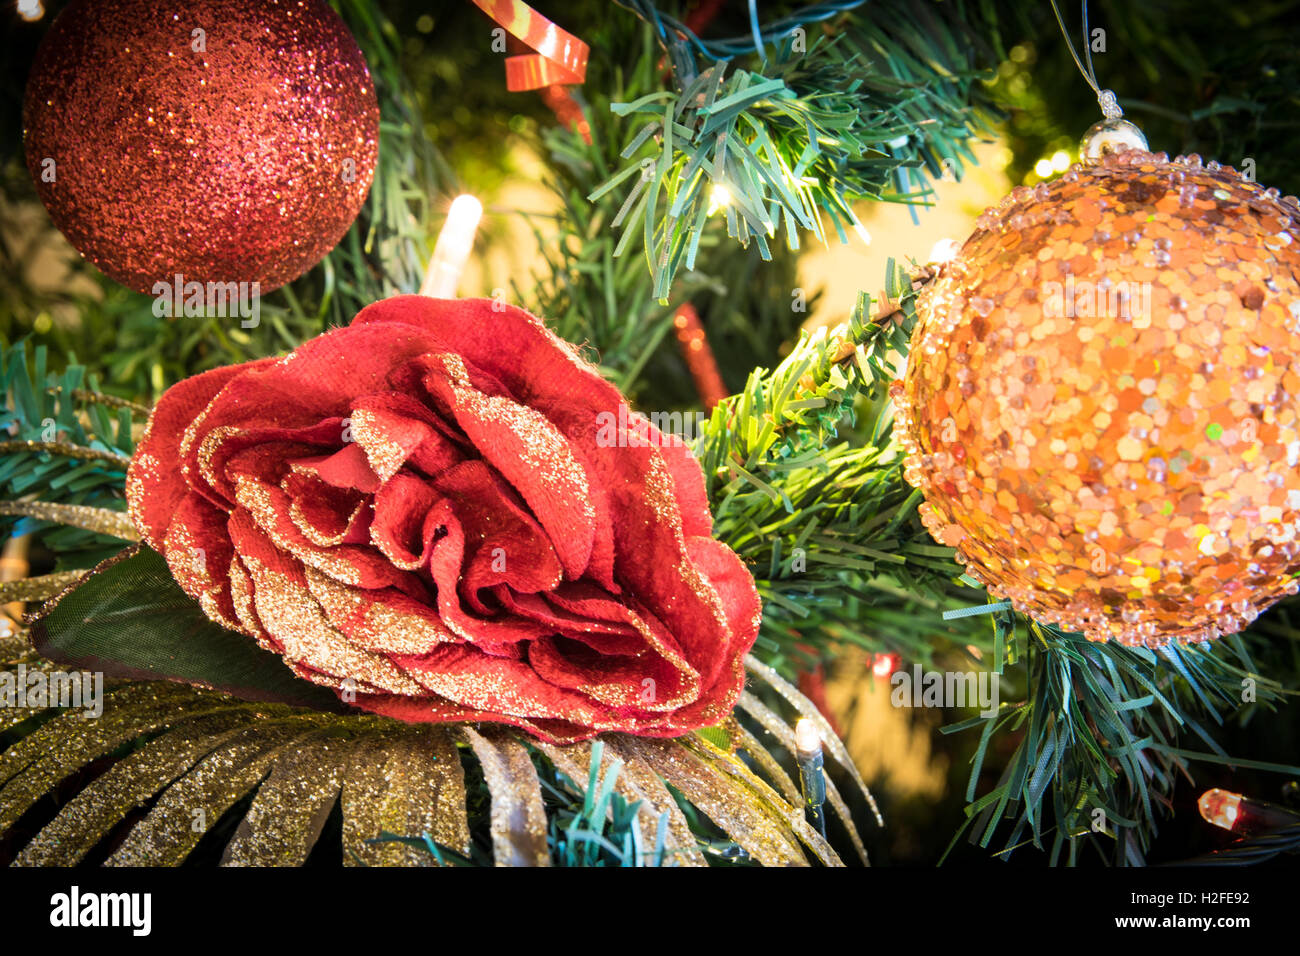 Sfondo formato da colorate decorazioni natalizie. Foto Stock